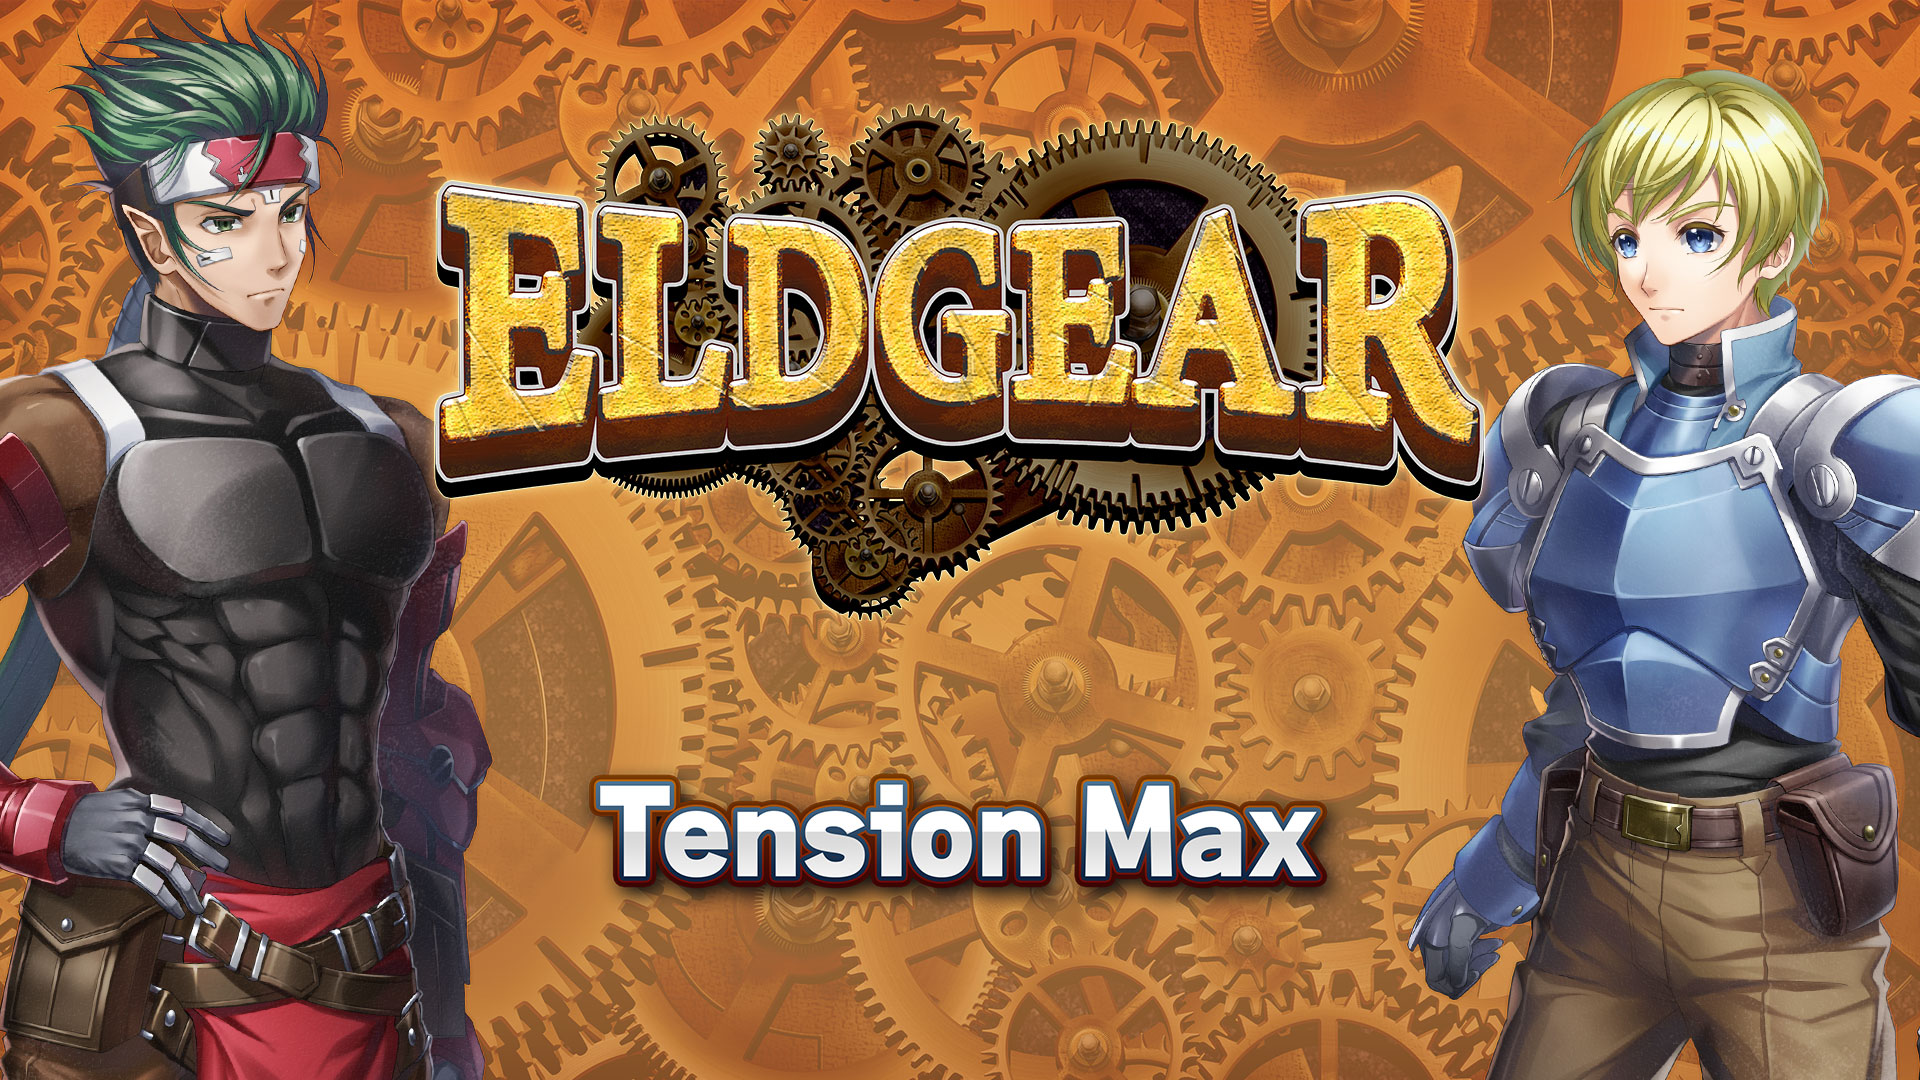 Tension Max - Eldgear